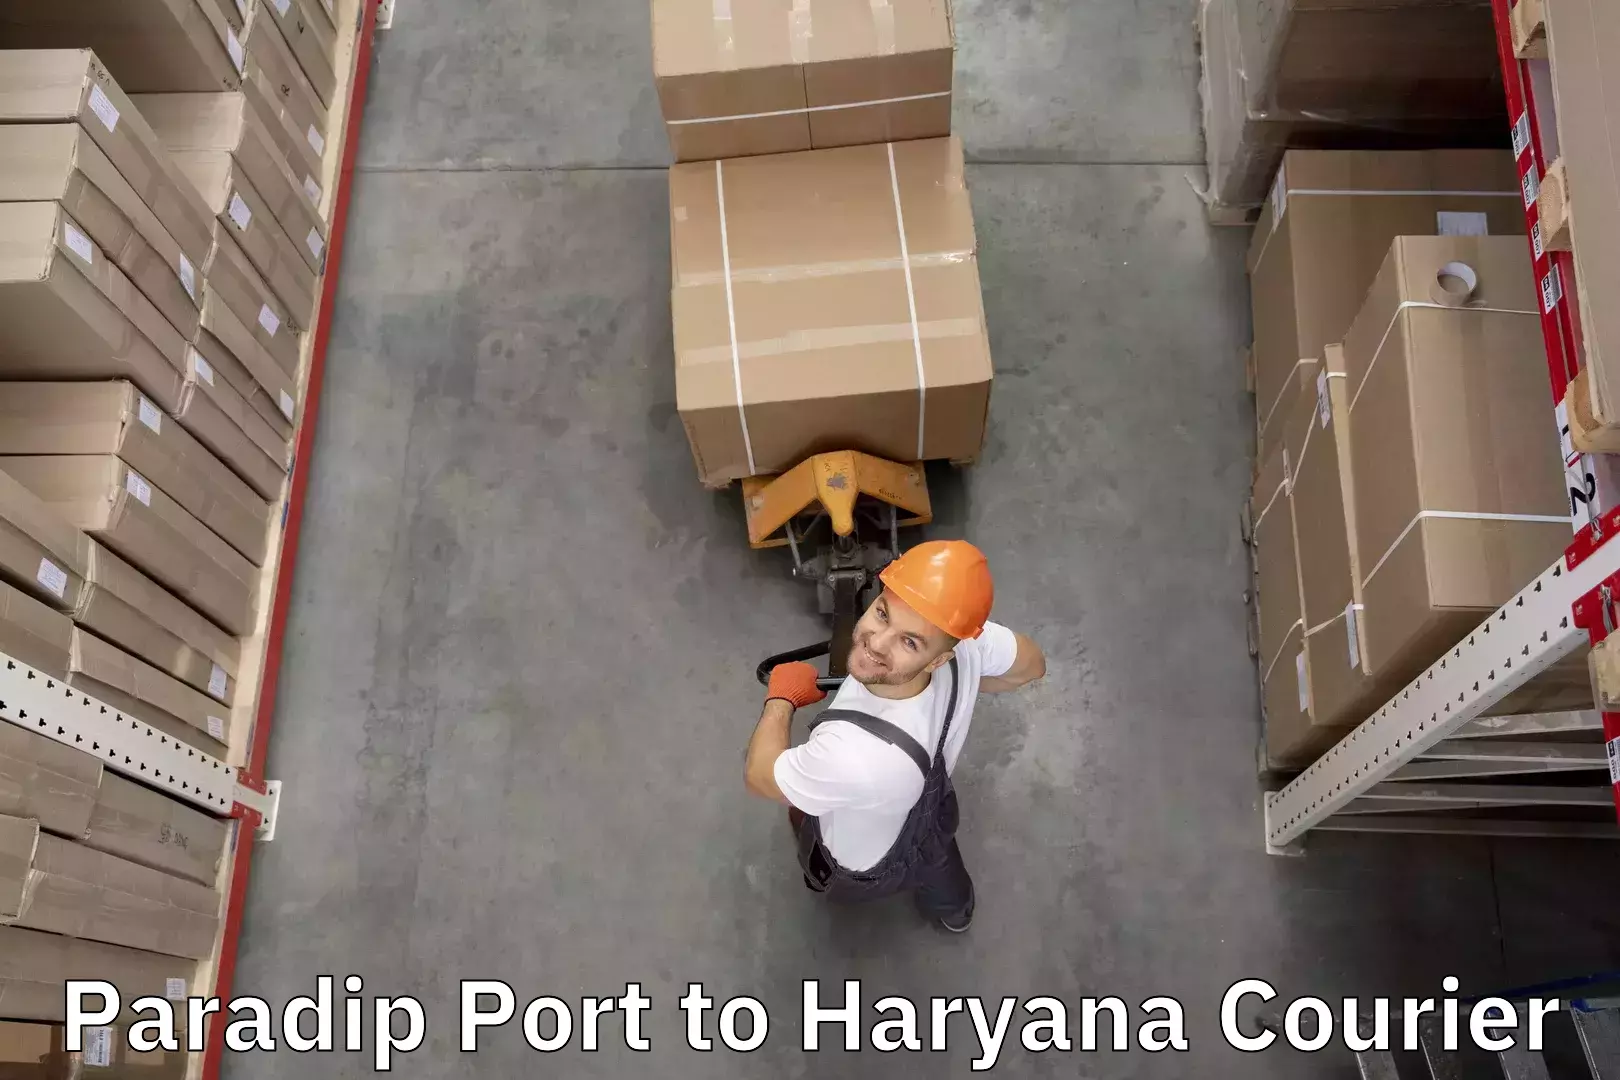 Baggage shipping service Paradip Port to Charkhari